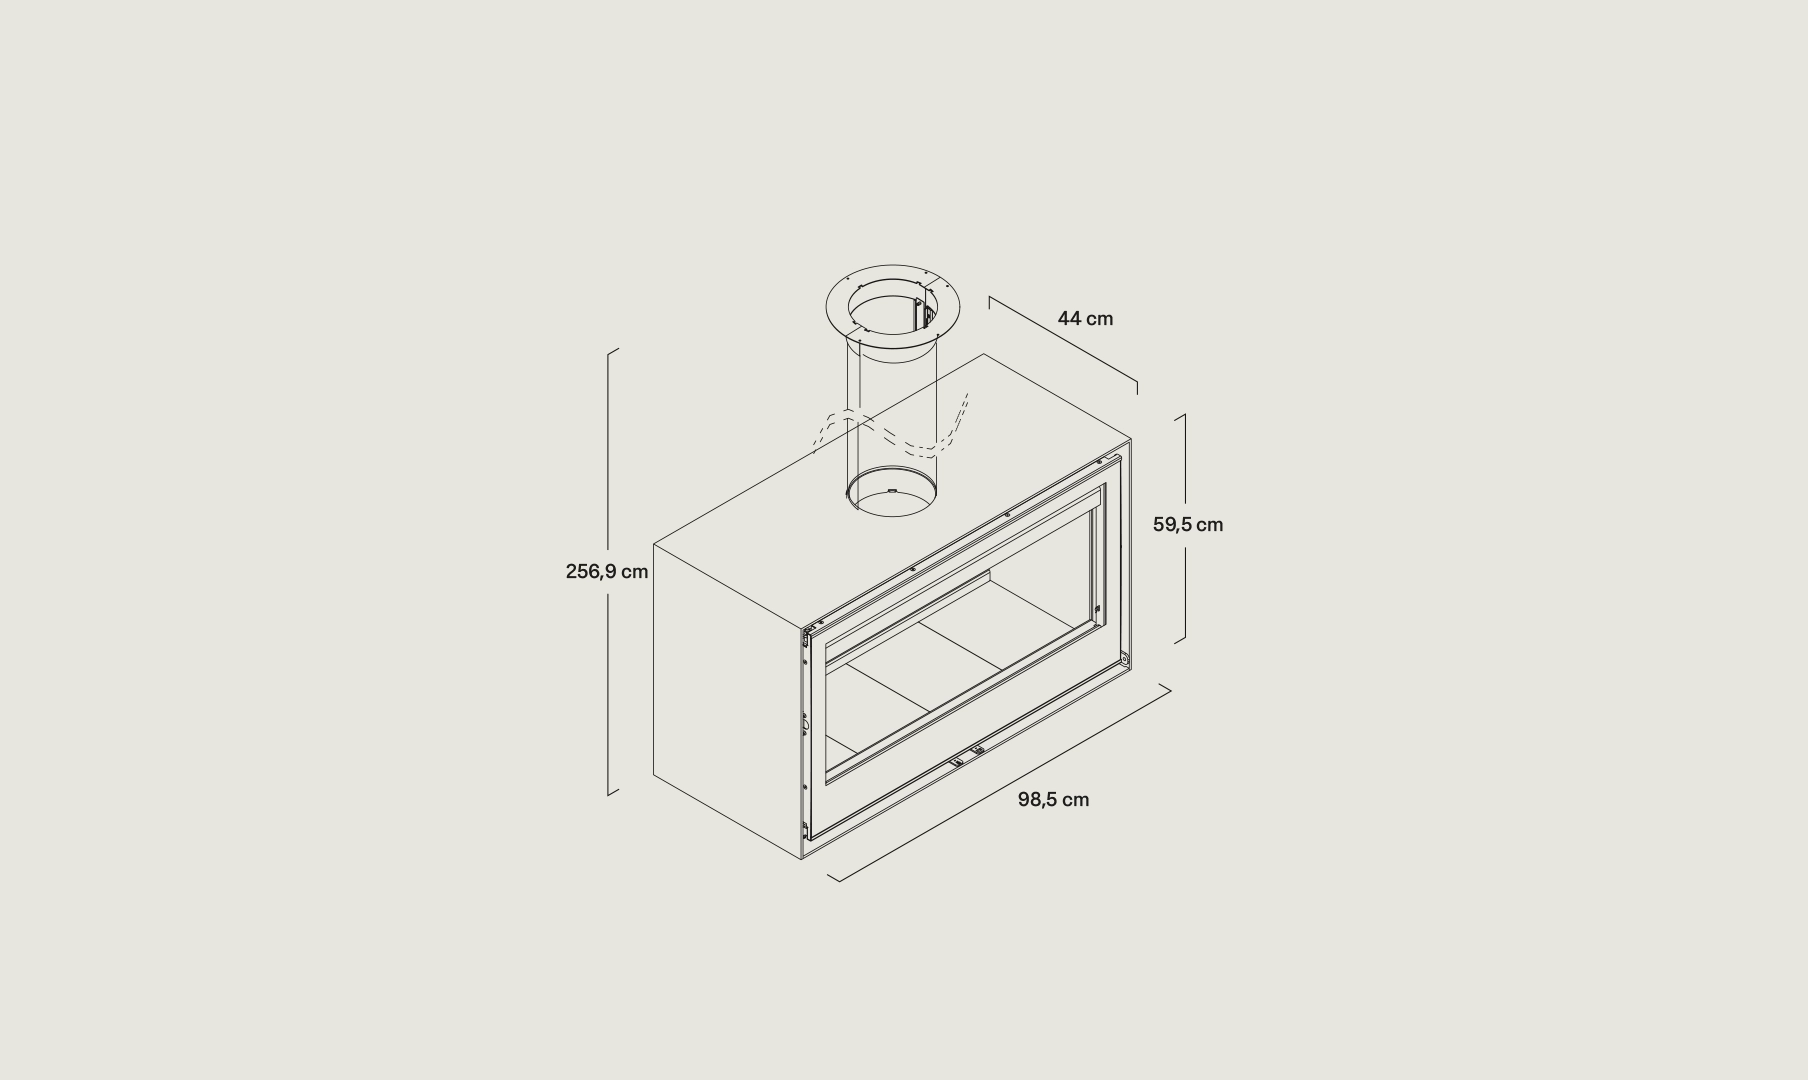 Dibujo vectorial estufa Habit 100 DC Doble Cara de Rocal con sus medidas 